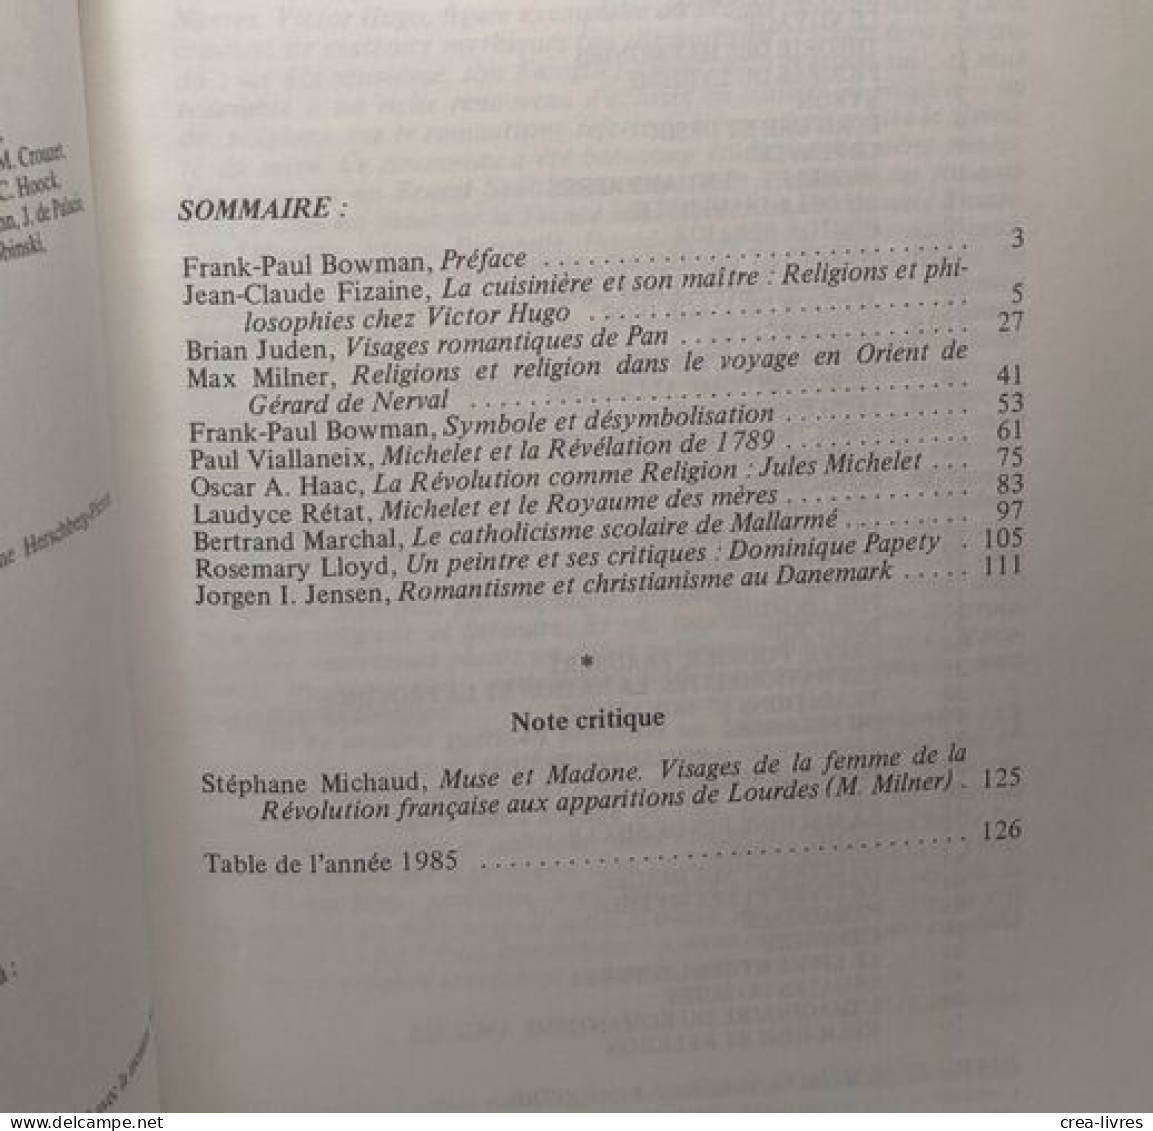 ROMANTISME - Revue Du Dix-neuvieme Siècle - N°50: Religions Et Religion (1985) + N°51: Premiers Combats Du Siècle (186) - Autres & Non Classés